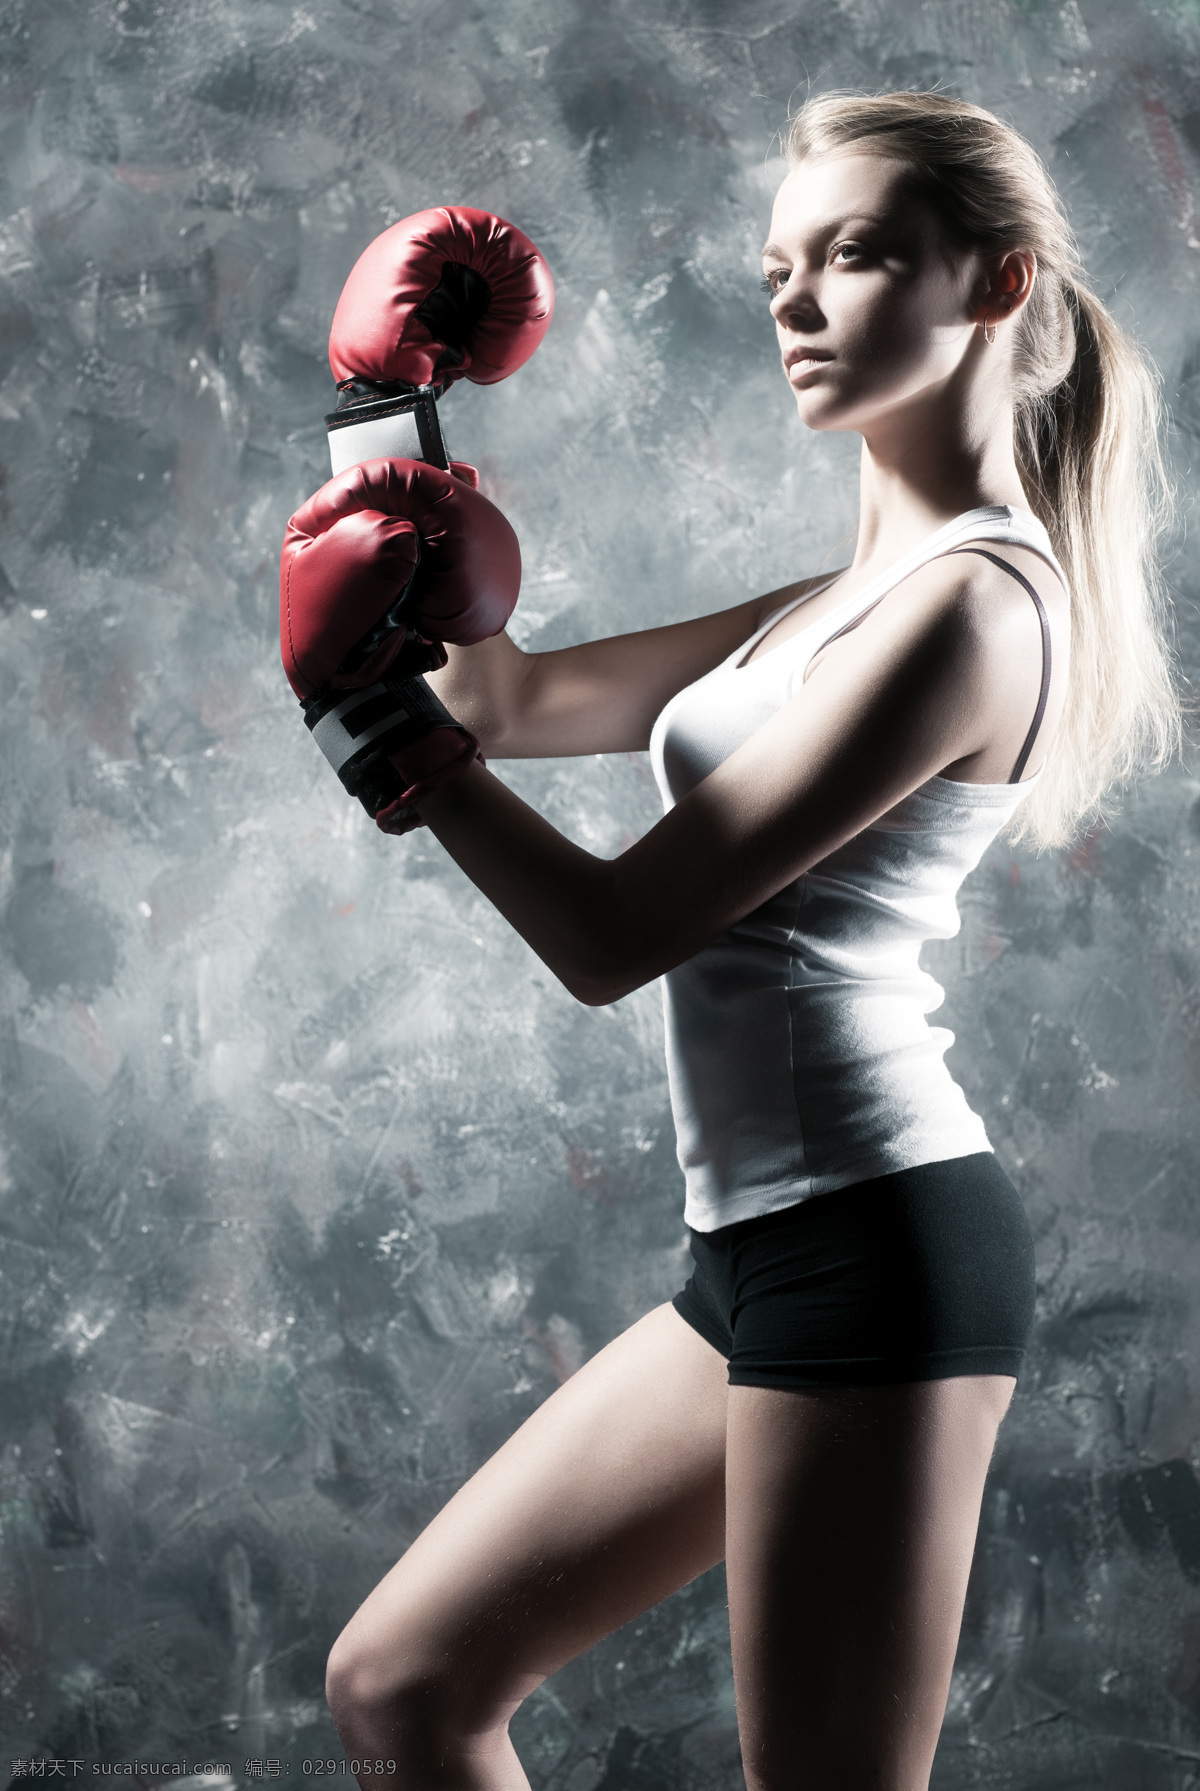 打拳 击 美女图片 美女 女人 人物 人物摄影 人物素材 武术 练武 健身 锻炼 体育运动 生活百科